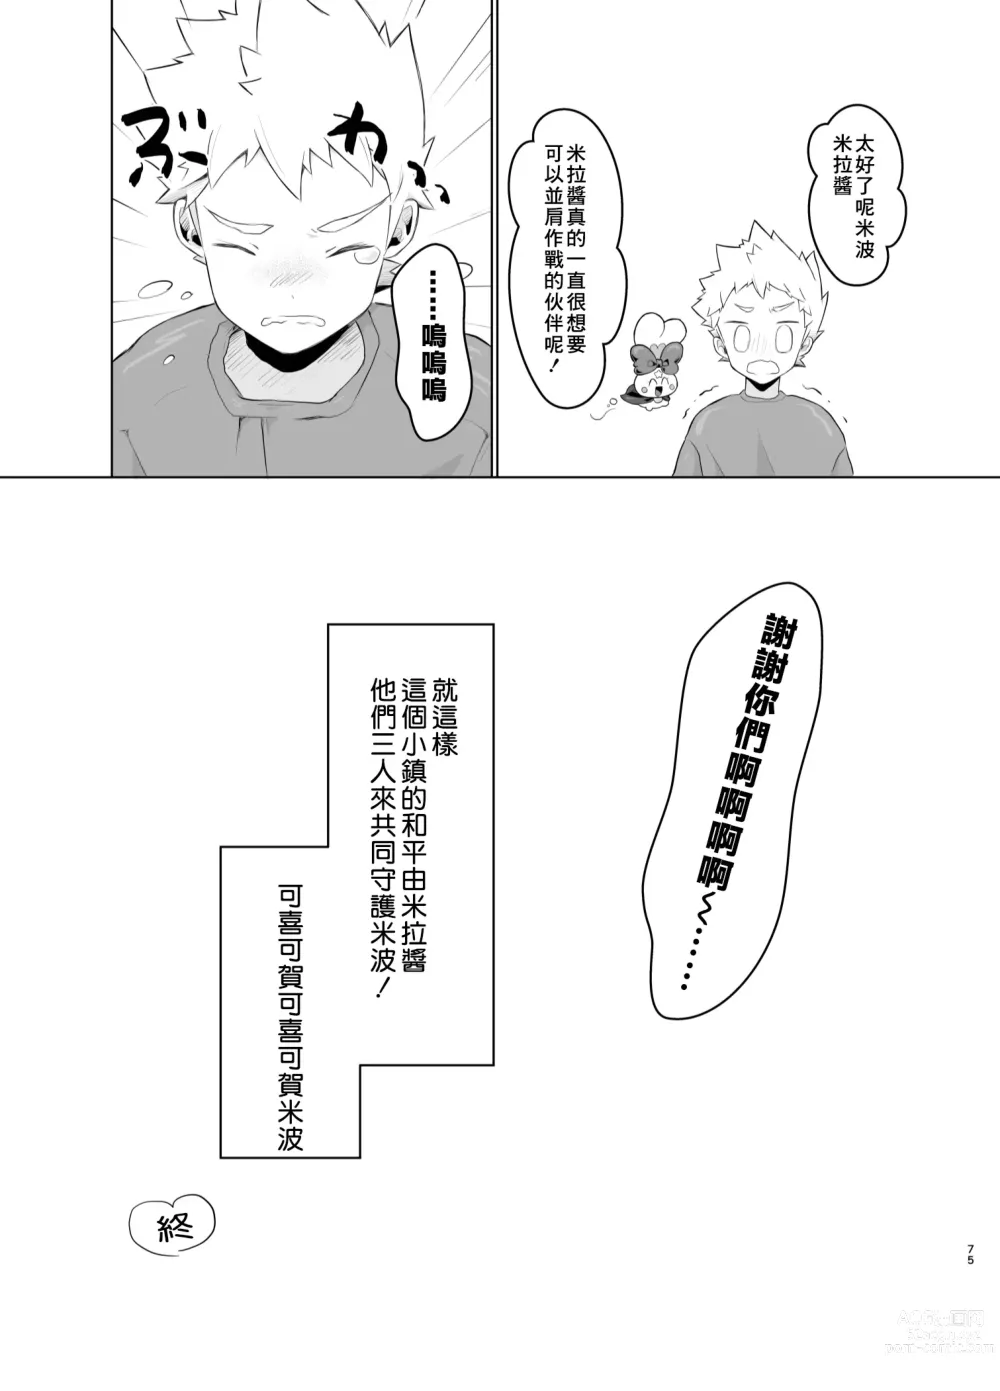 Page 74 of doujinshi Mahou Shoujo Mirakuru Mirachan丨魔法少女奇蹟米拉醬 (decensored)